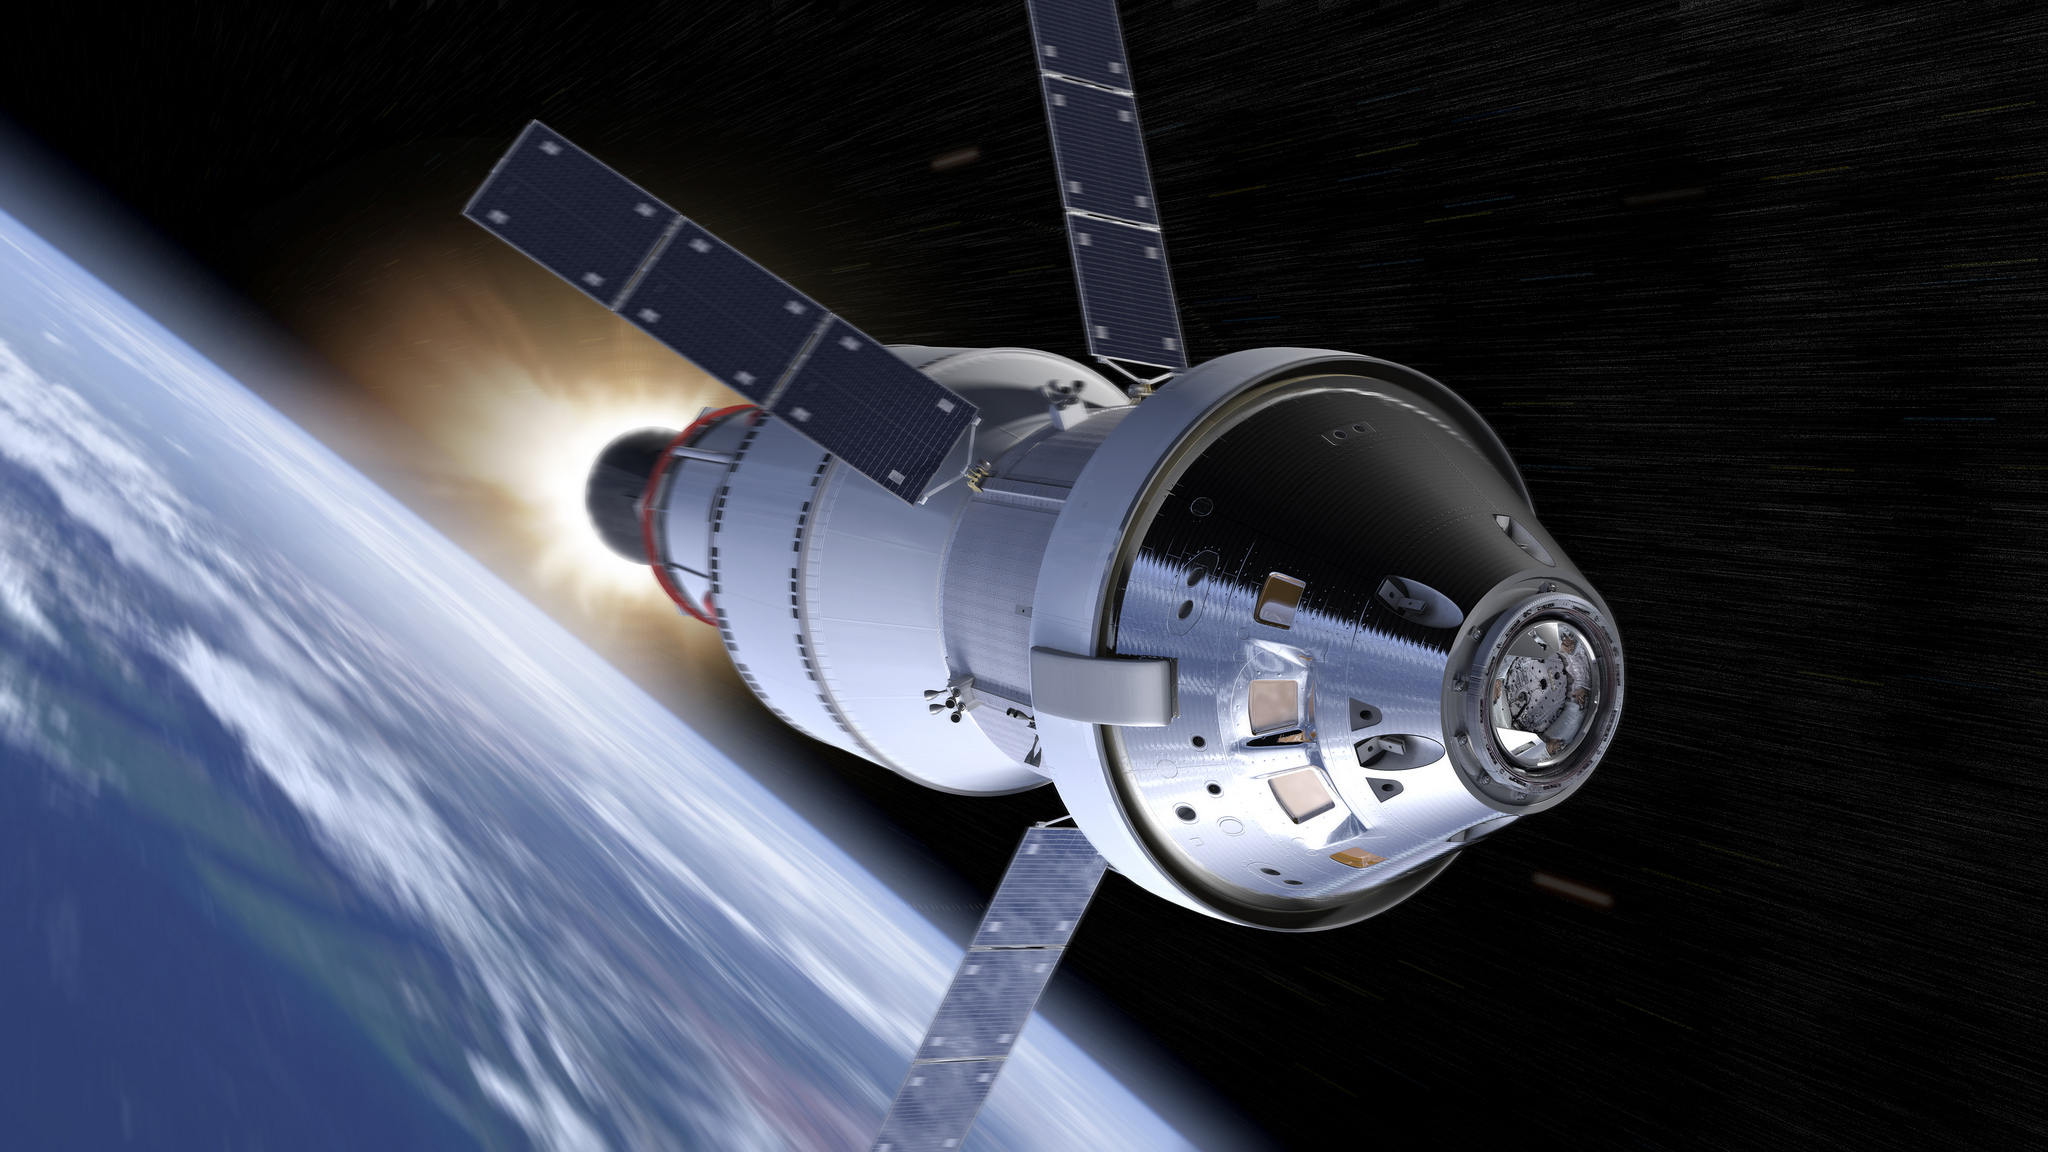 НАСА планирует запустить транспортную систему на земной спутник